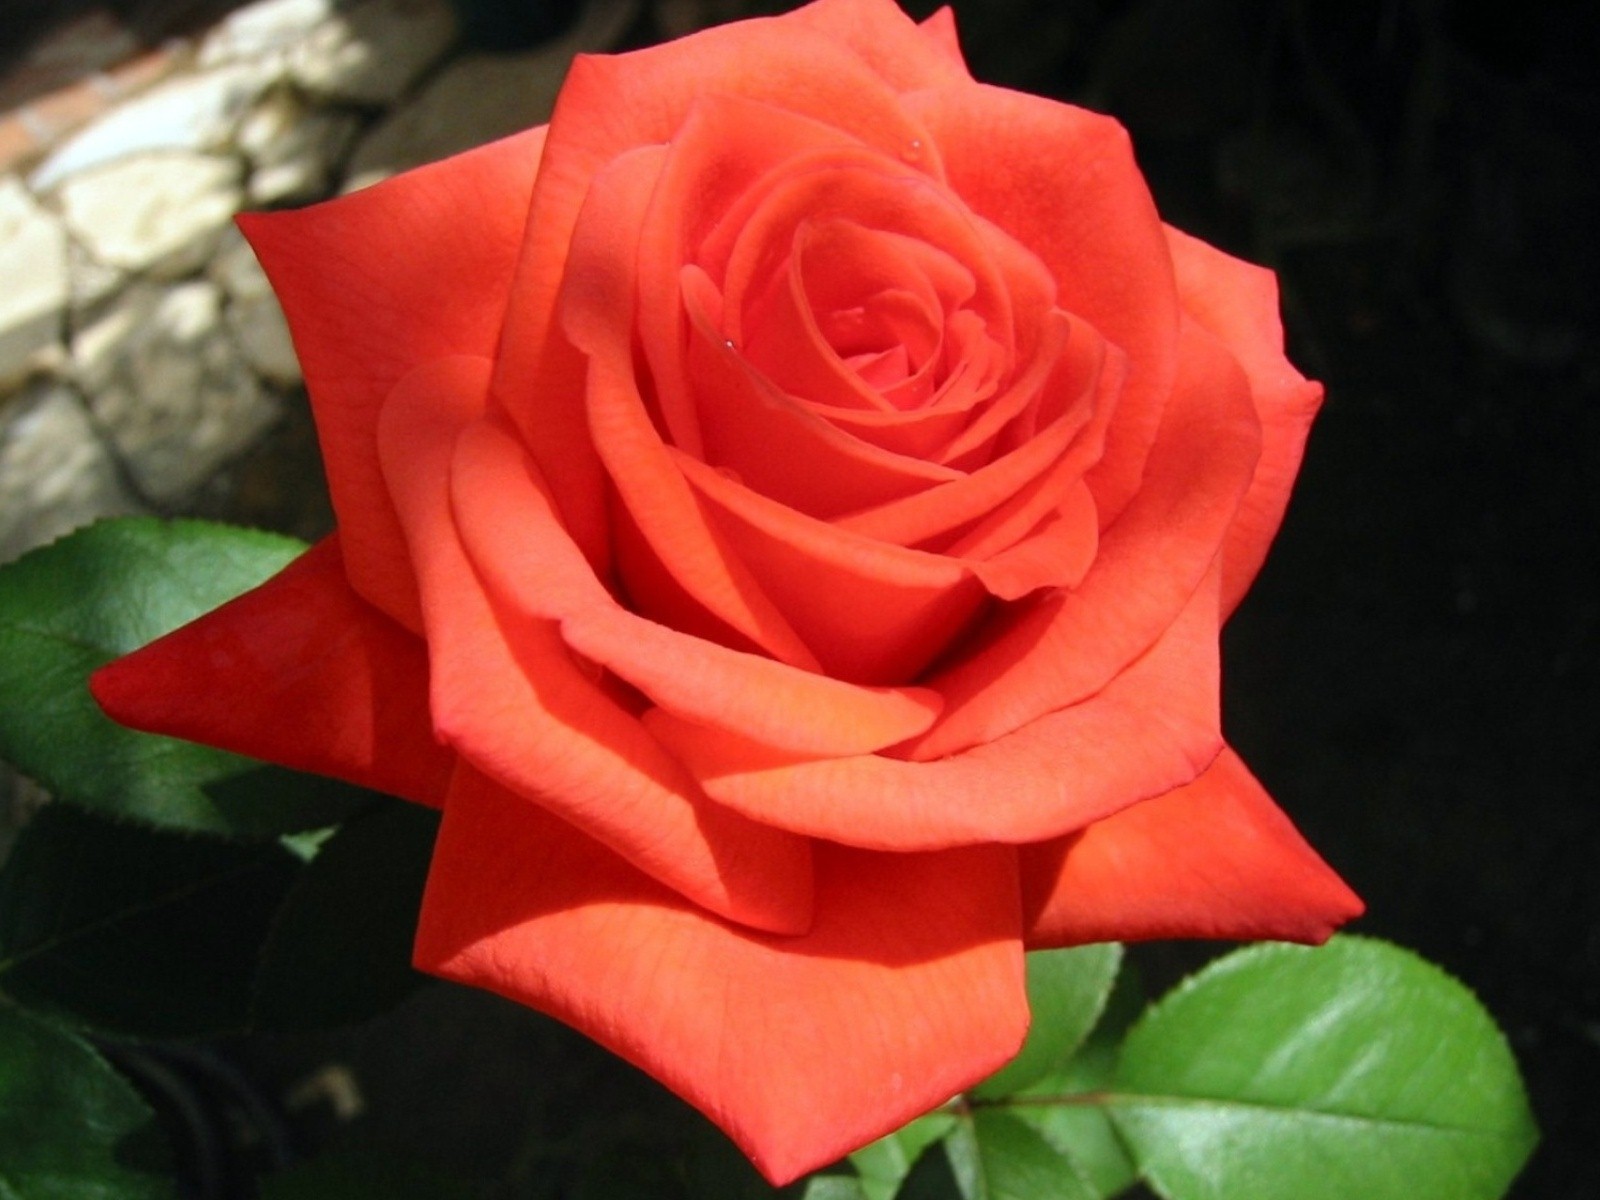 rose flower wallpaper hd descarga gratuita,flor,rosa,rosas de jardín,planta floreciendo,pétalo